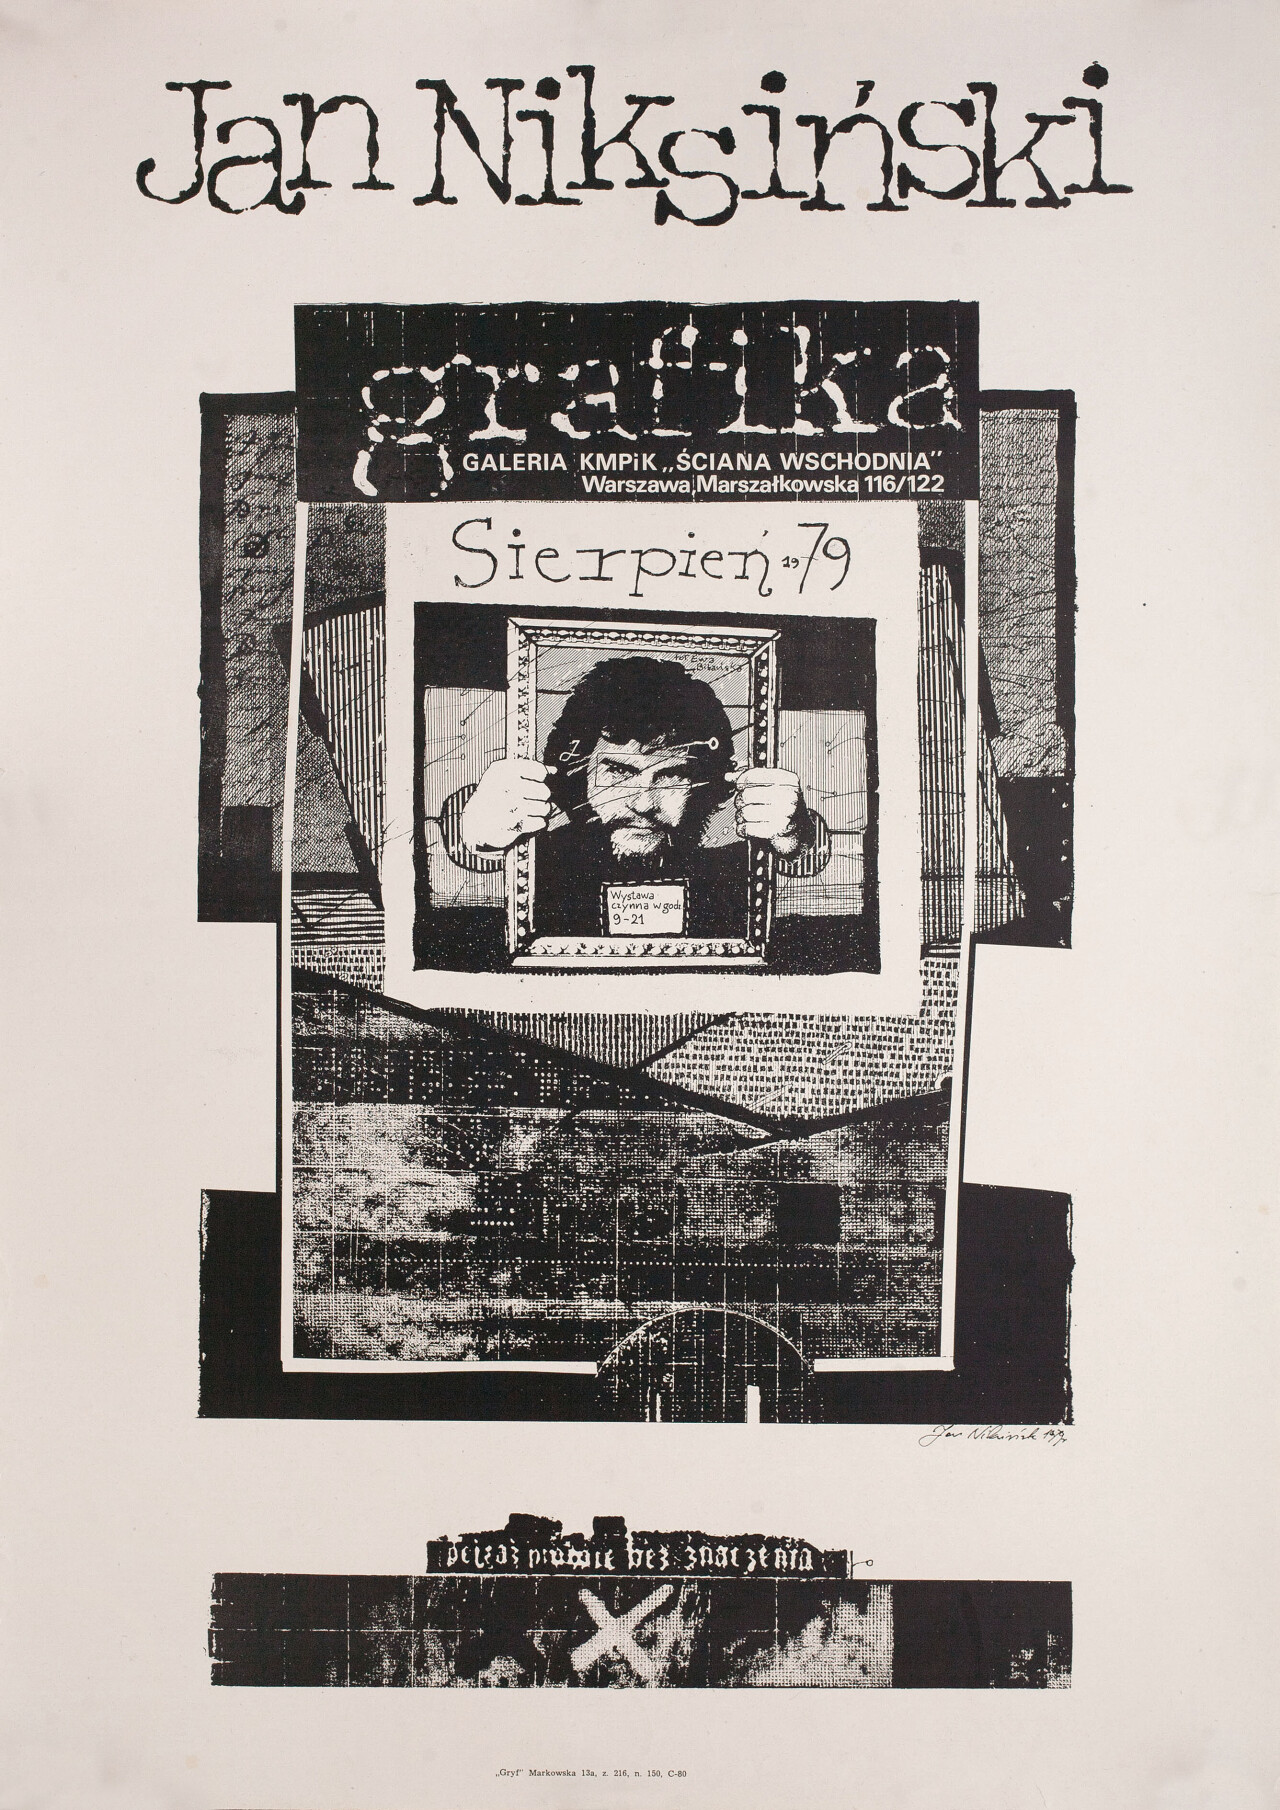 Польский постер, автор Ян Никсински (графический дизайн, 1979 год)